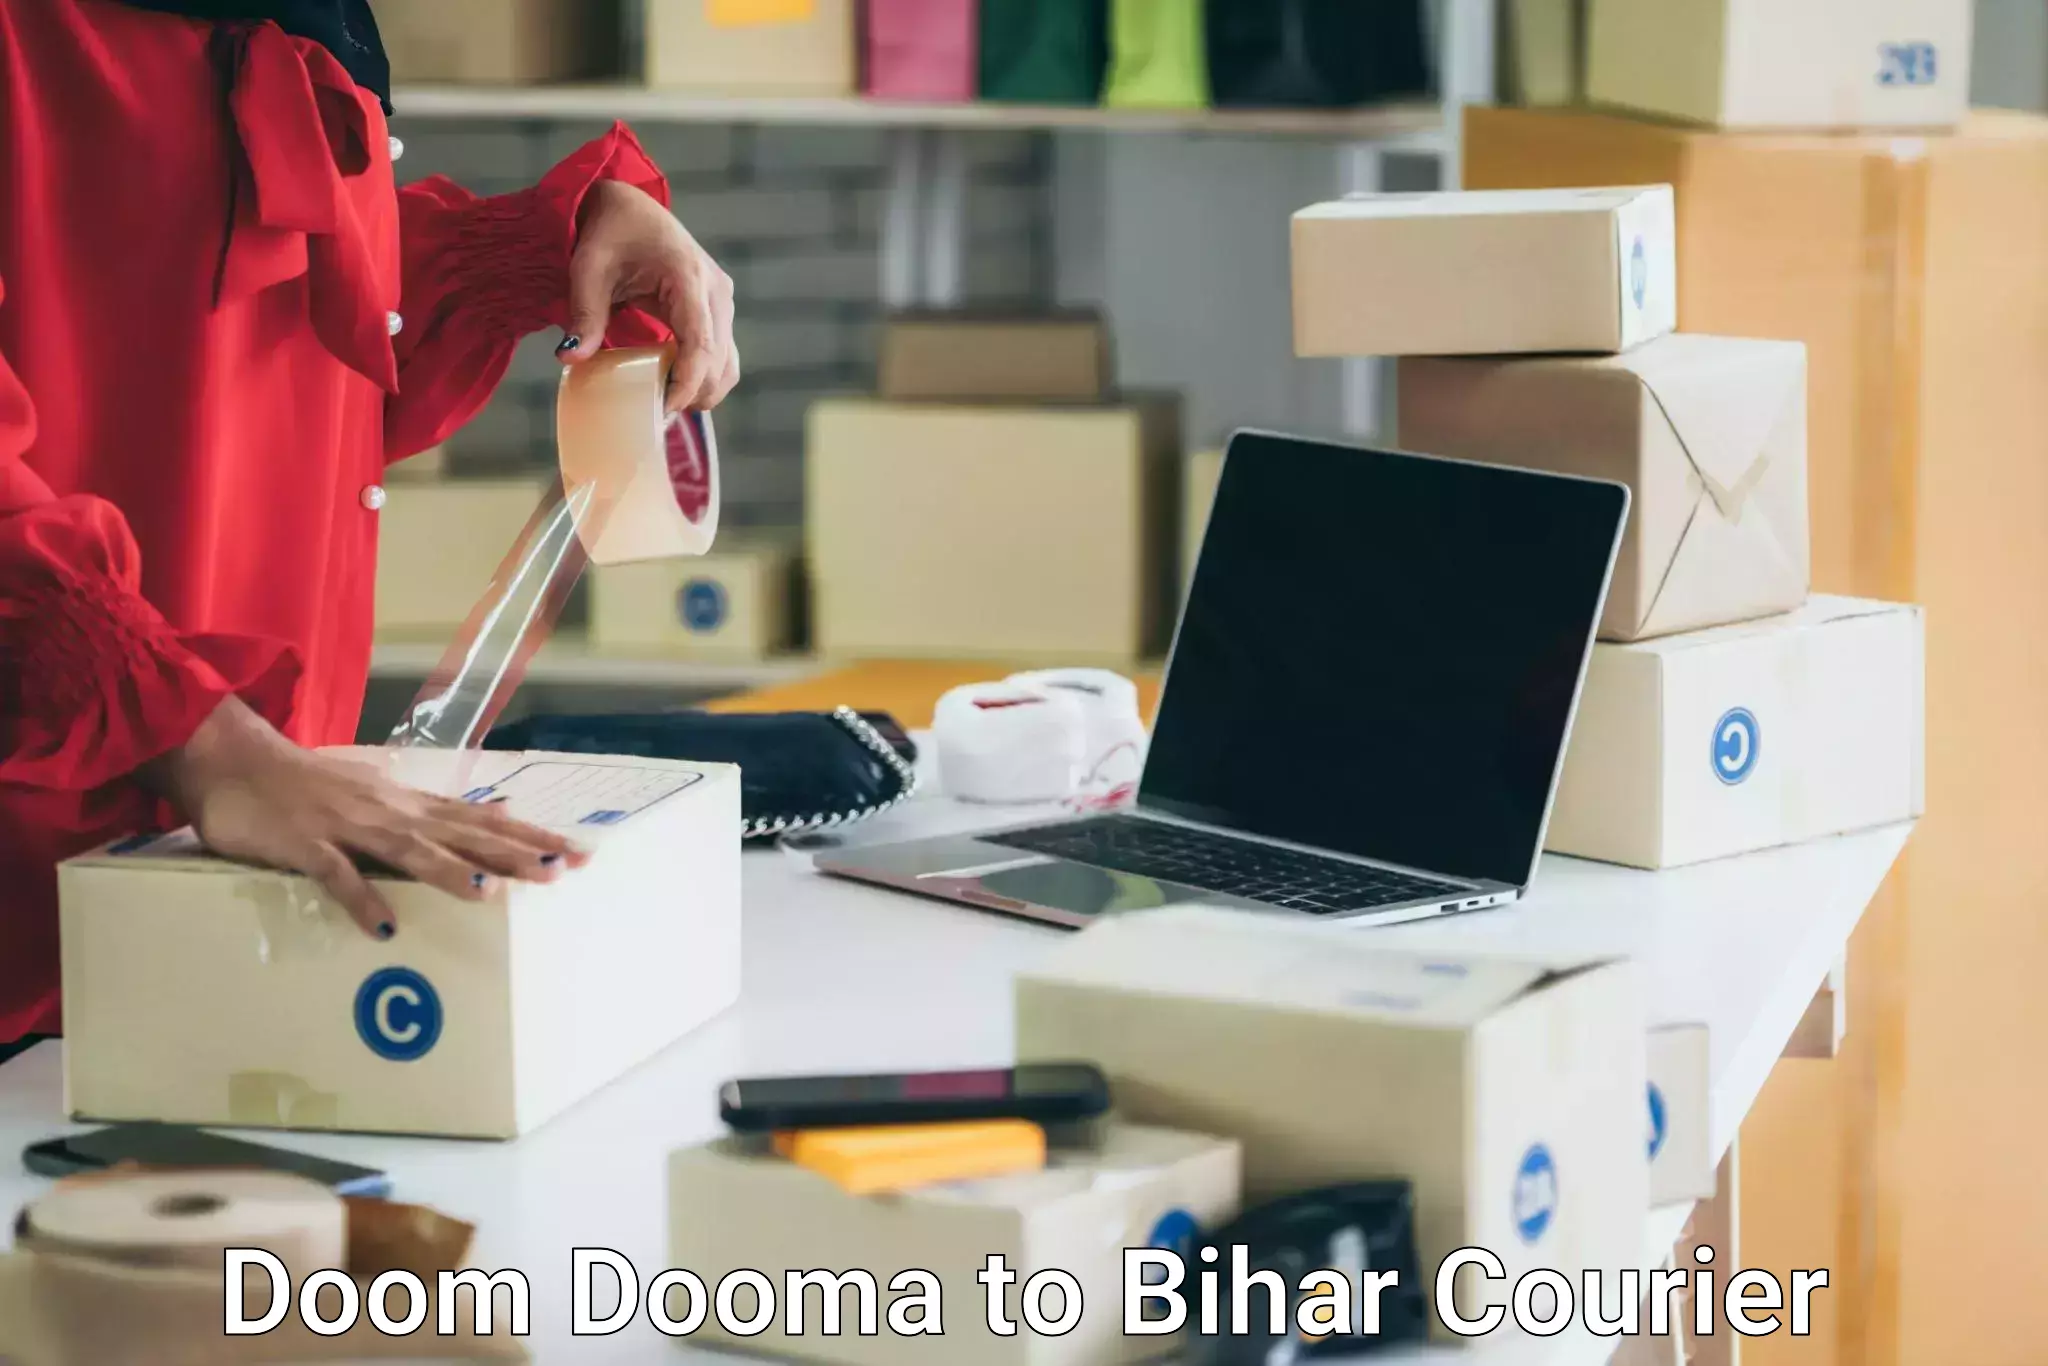 Furniture transport professionals Doom Dooma to Dehri